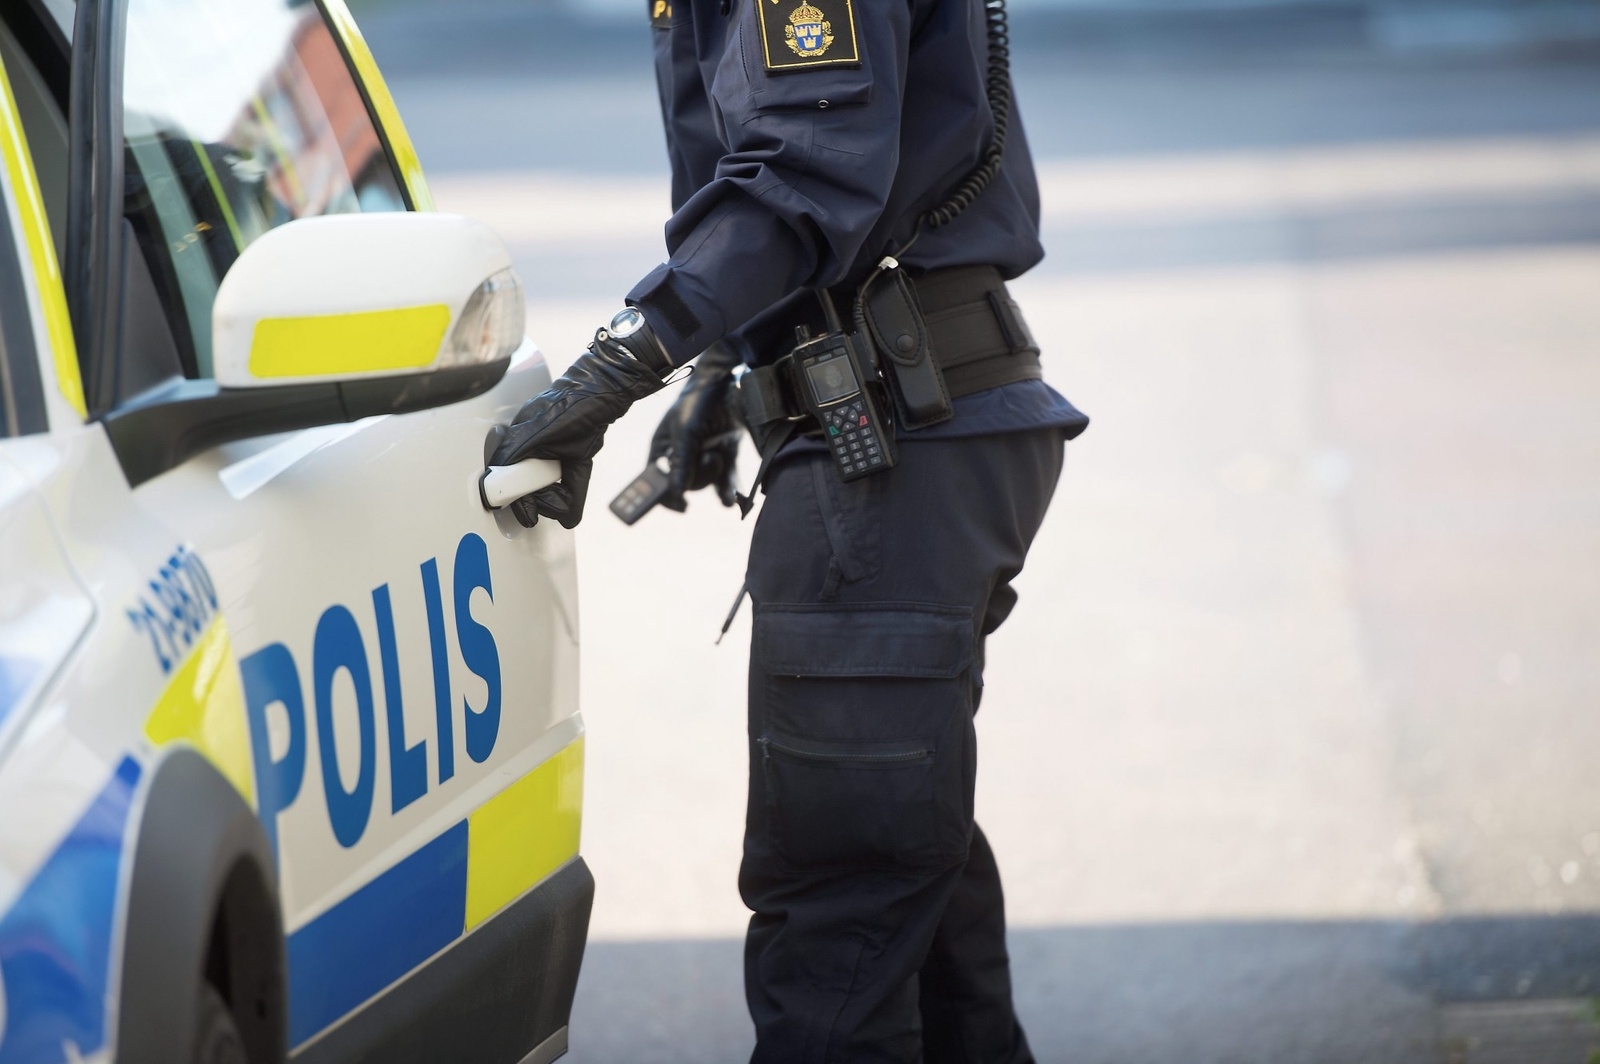 Årligen utreder polisens ATK-sektion, automatiserad trafiksäkerhetskontroll, 300 000 fortkörningsärenden varav cirka 35 procent leder till lagföring.
Foto: Fredrik Sandberg/TT